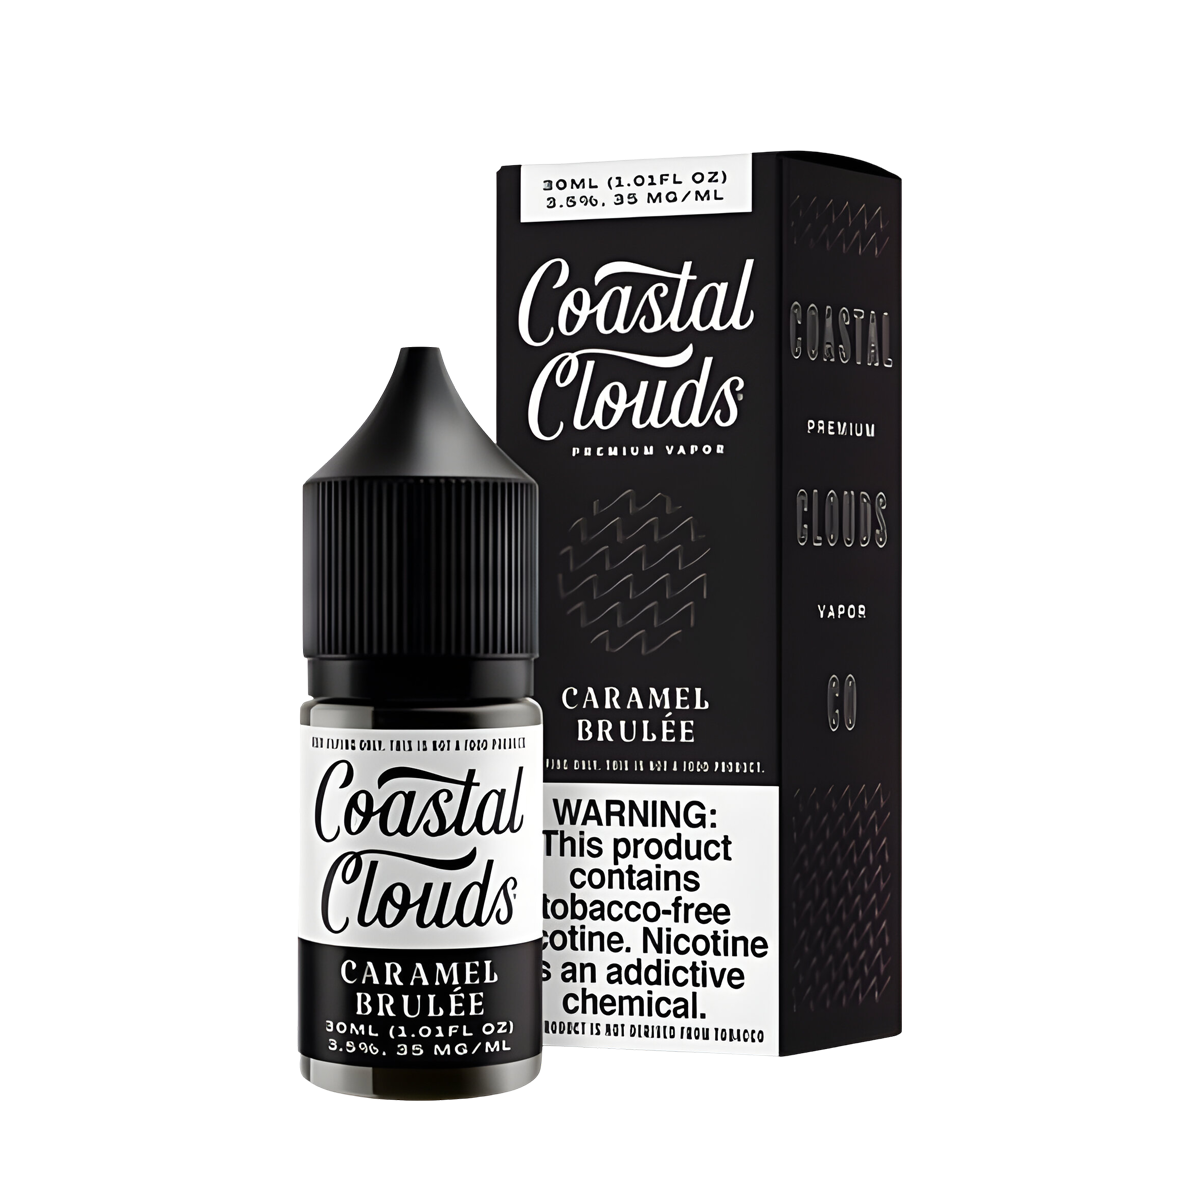 Coastal Clouds Salt Nicotine Vape Juice 35 Mg 30 Ml Caramel Brulee